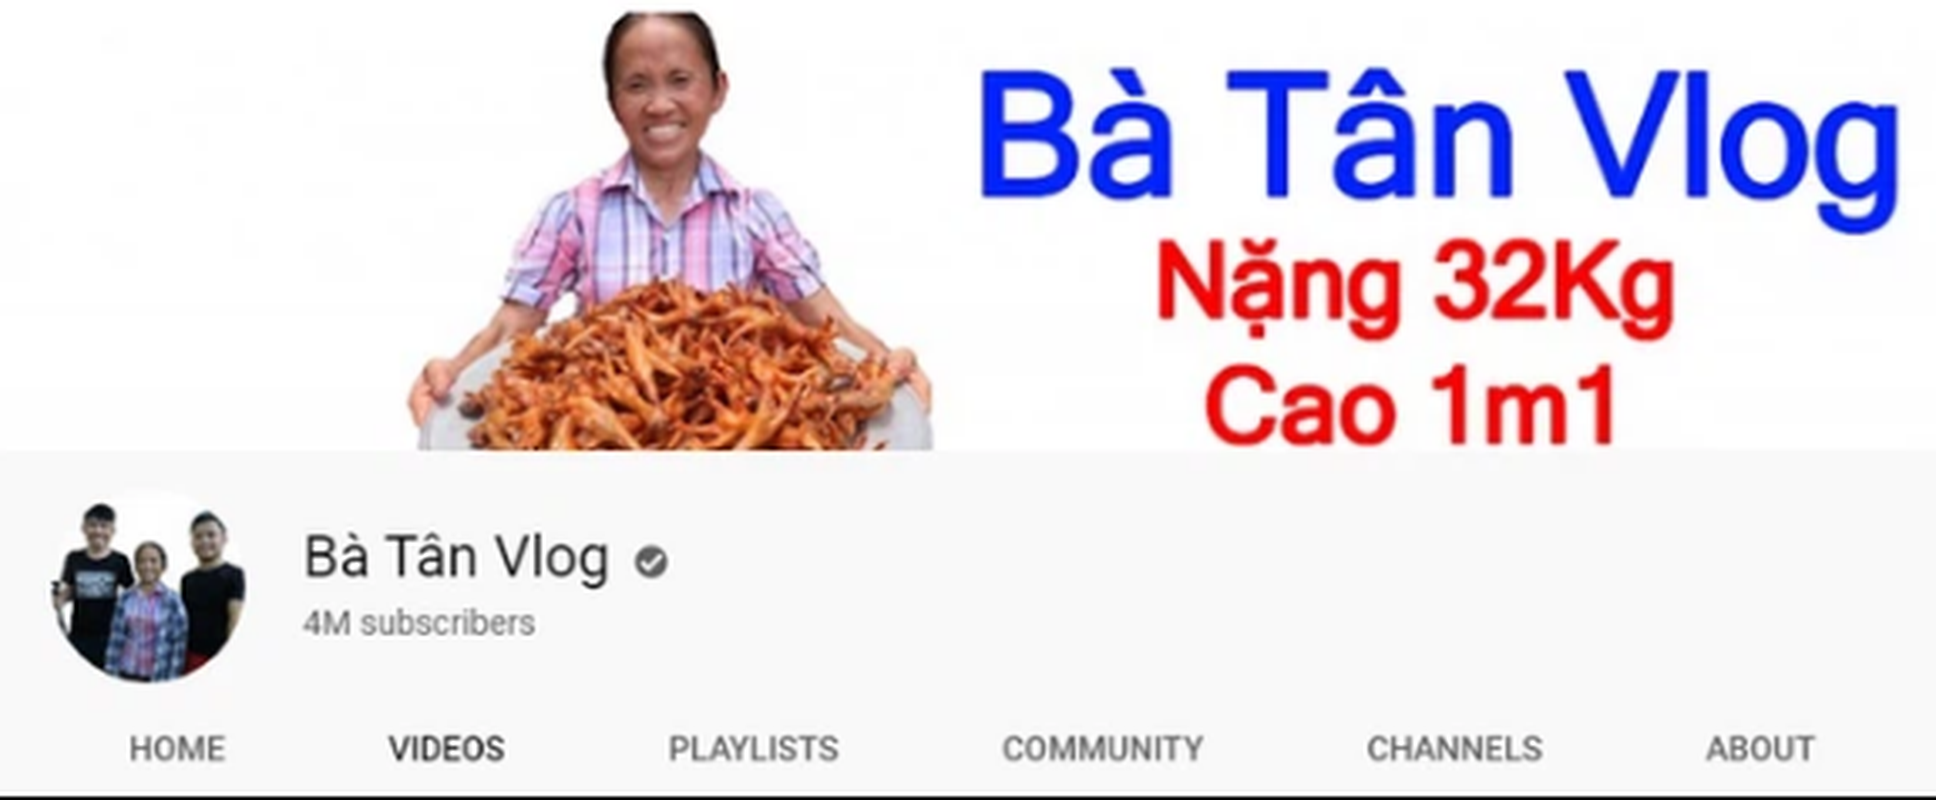 Ba Tan Vlog va nhung kenh Youtube dat ky luc nhanh den chong mat-Hinh-3